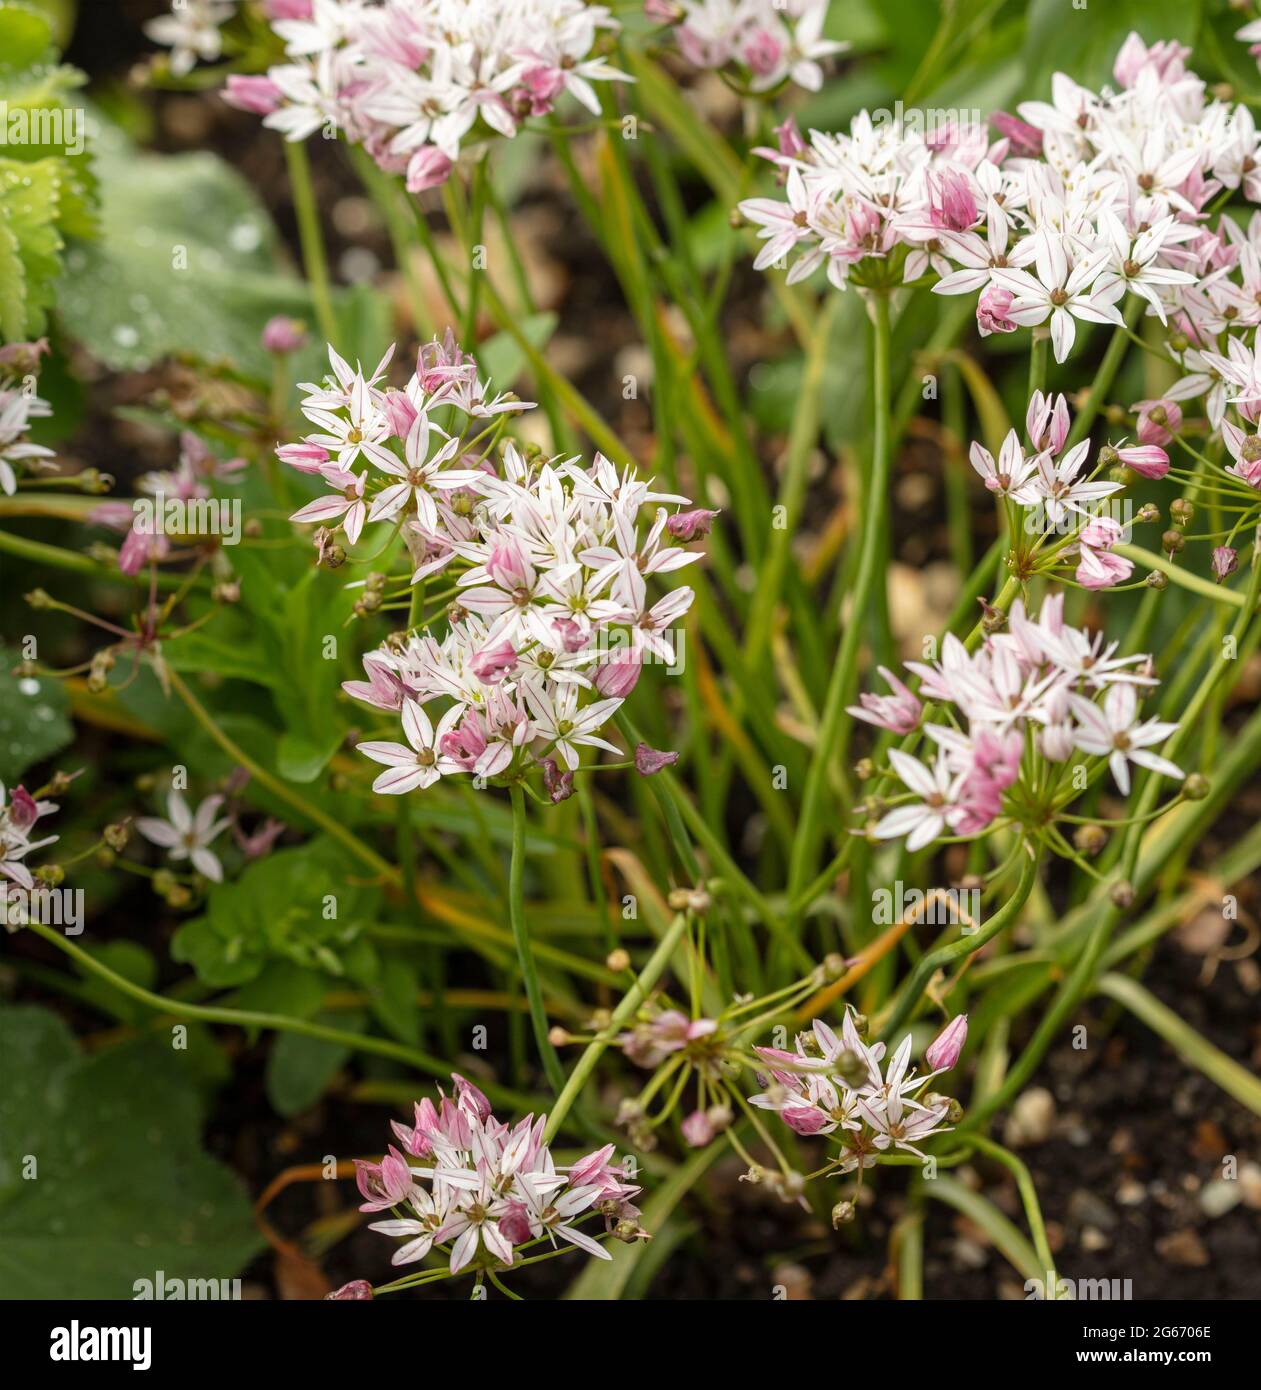 Prolific Allium ‘Caméléon, flowering. Close-up natural flower portrait Stock Photo